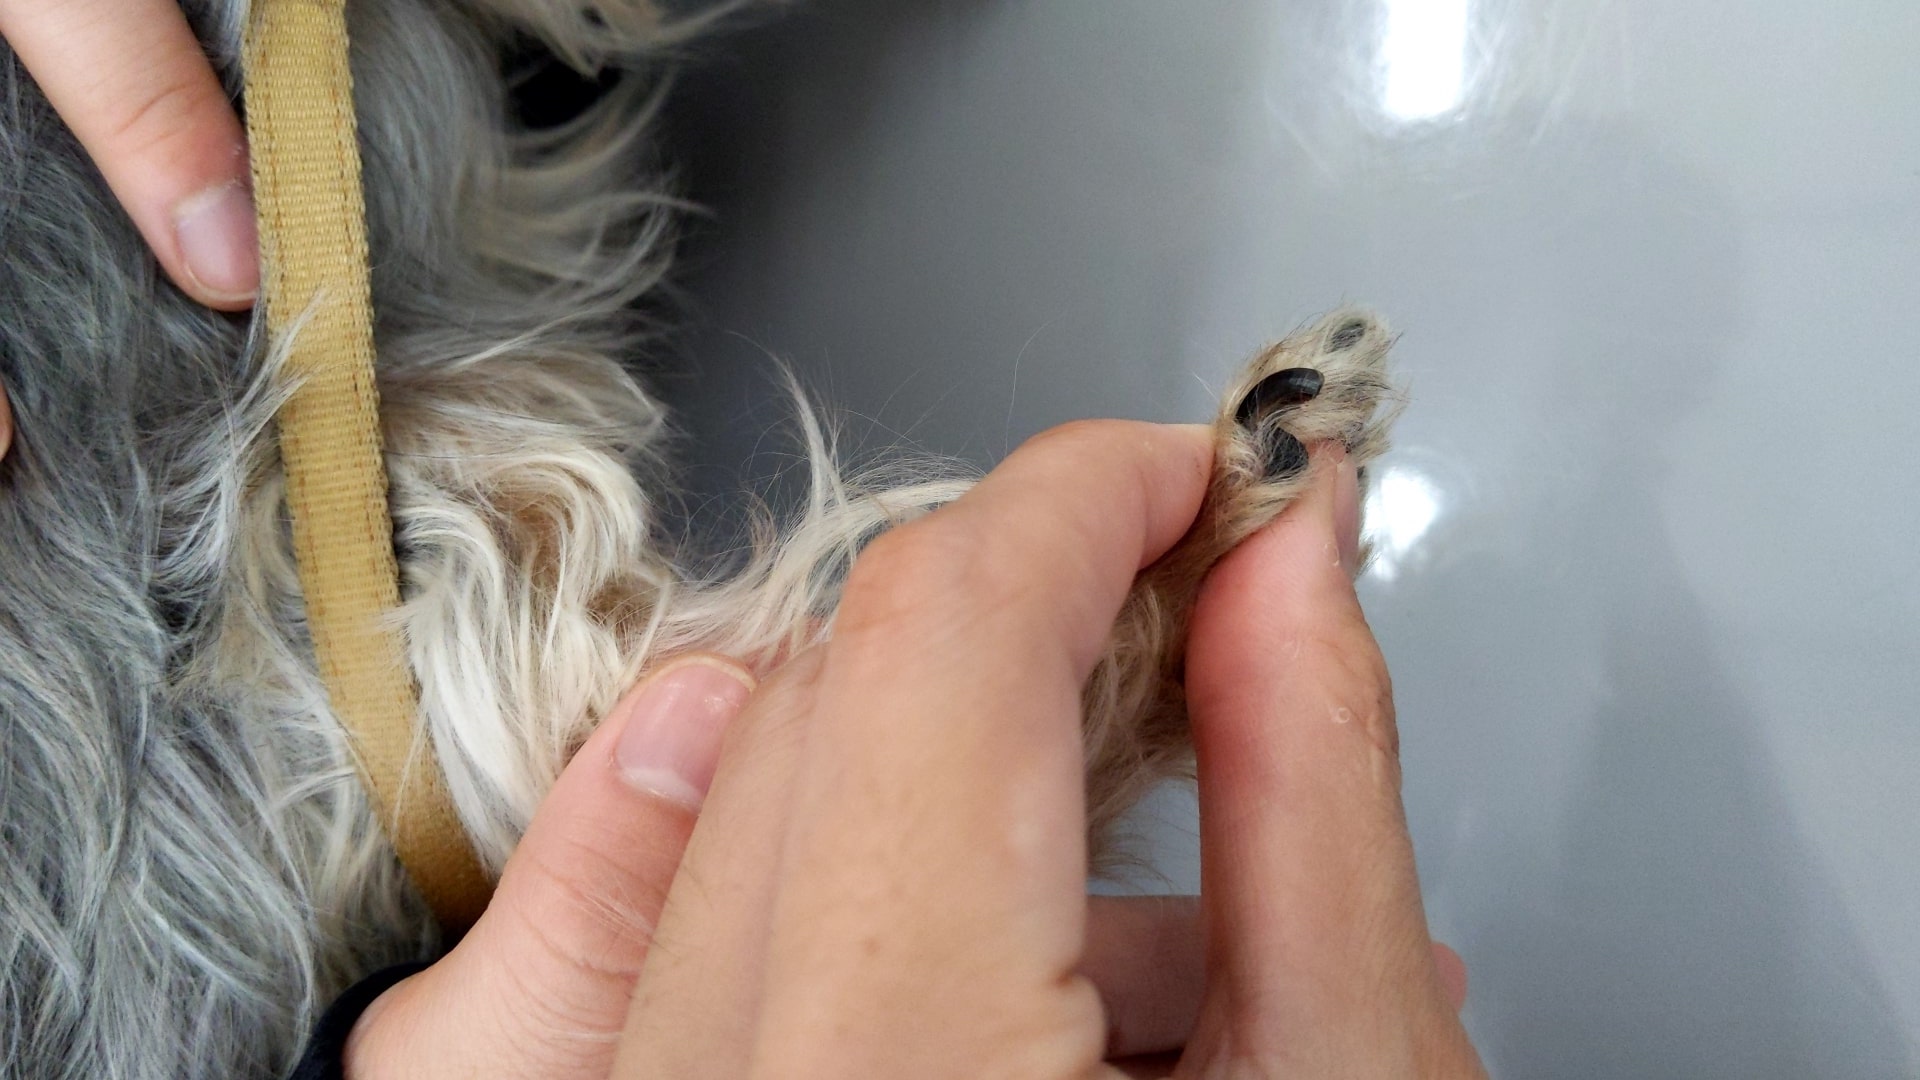 犬 爪 の 付け根 腫れ